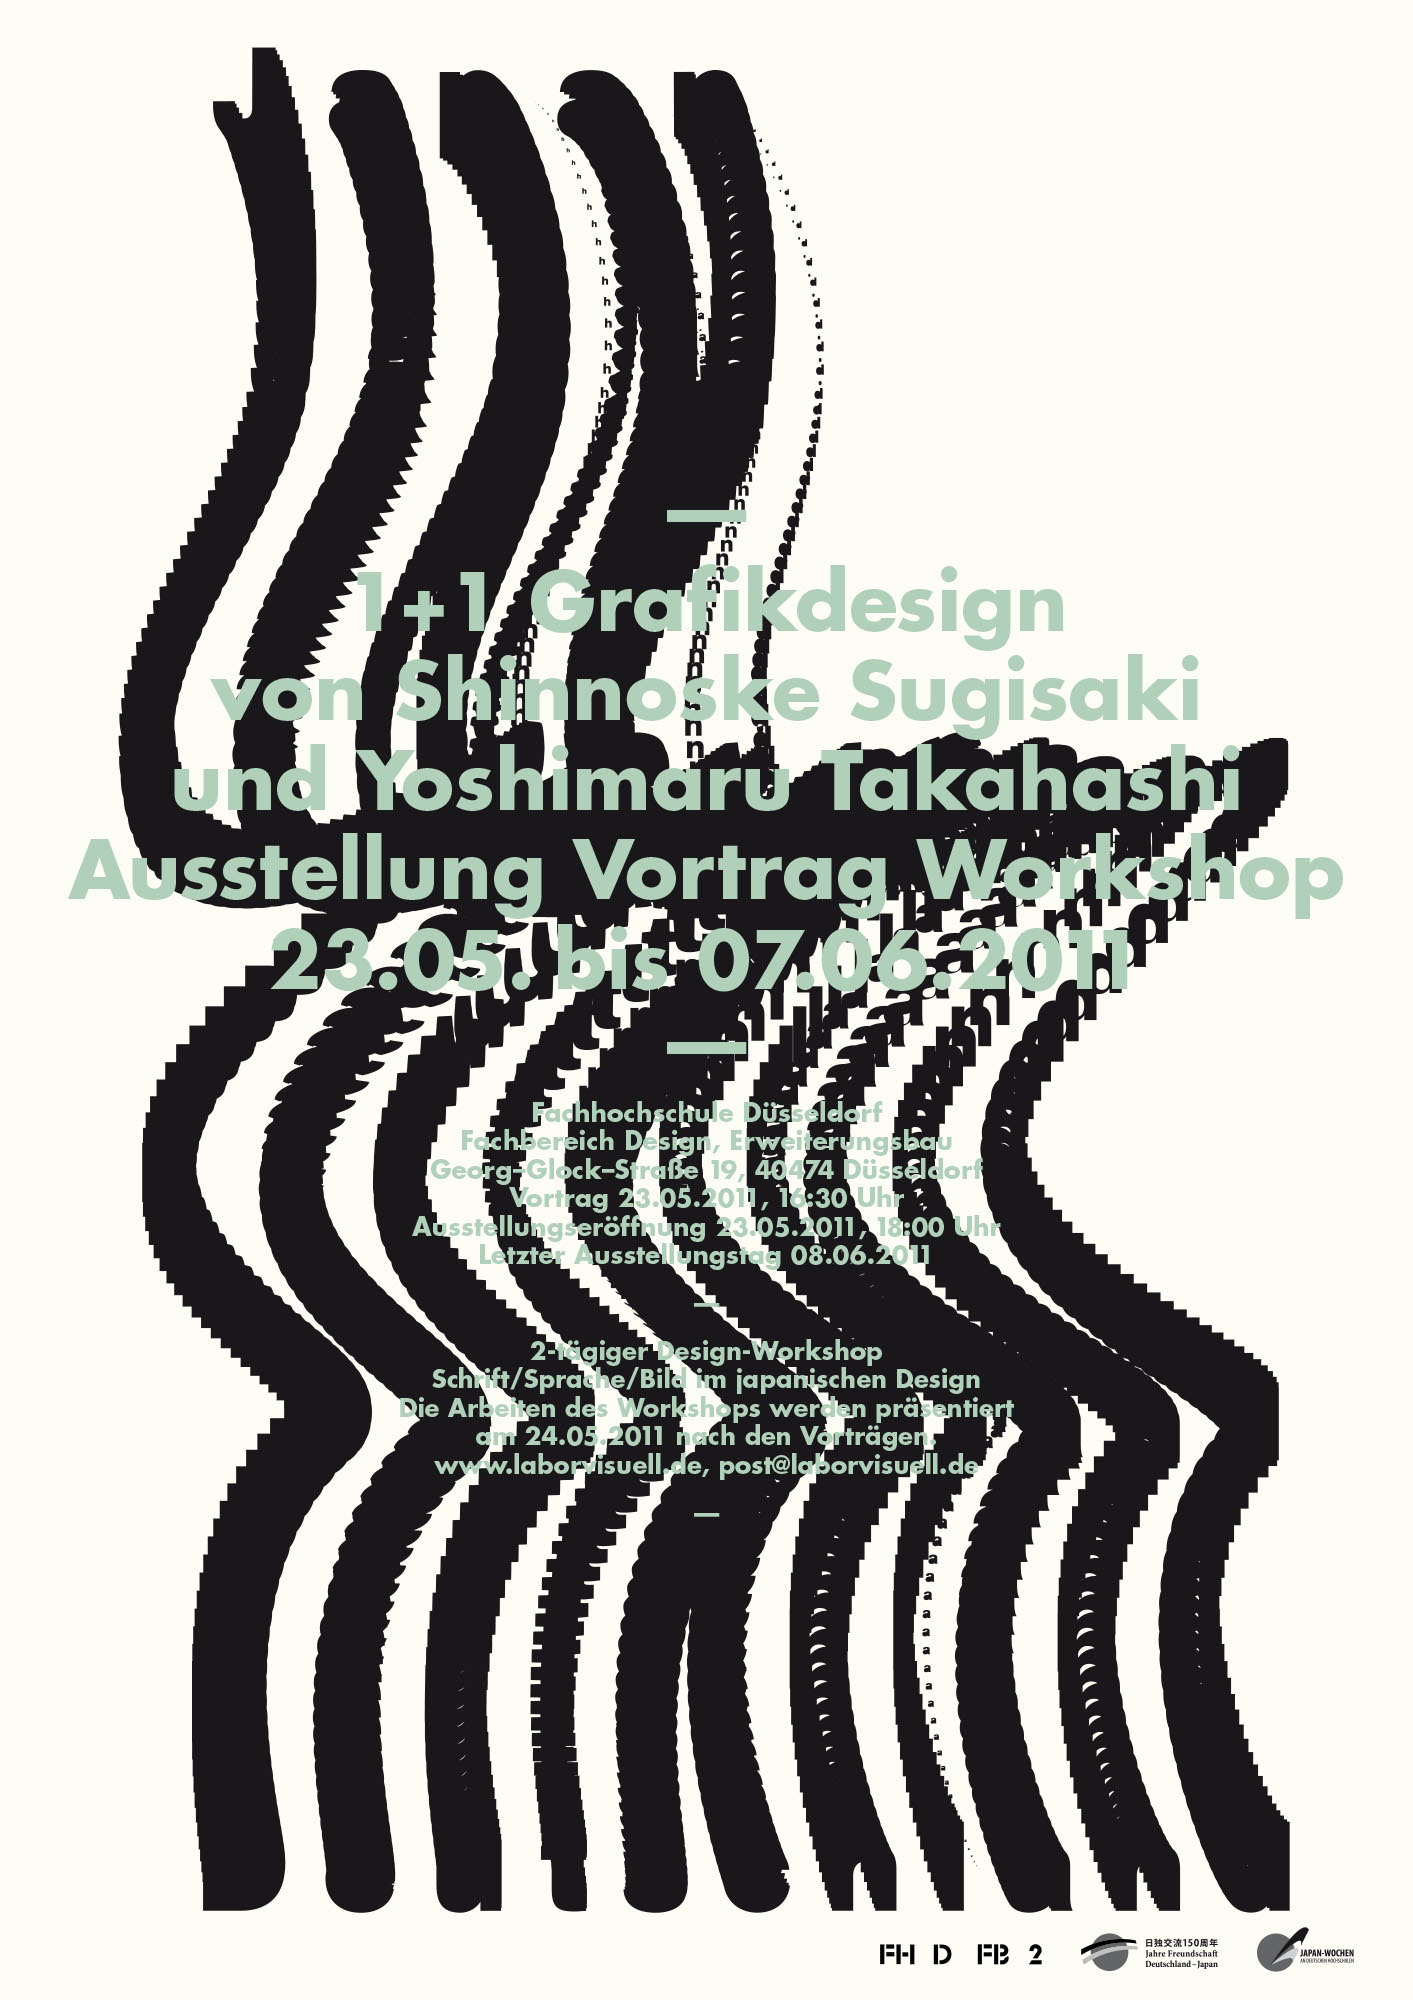 Gestaltet: Tim Sluiters, Betreut: Holger Jacobs, Victor Malsy, Philipp Teufel, Titel: 1+1 Grafikdesign, Jahr: 2011